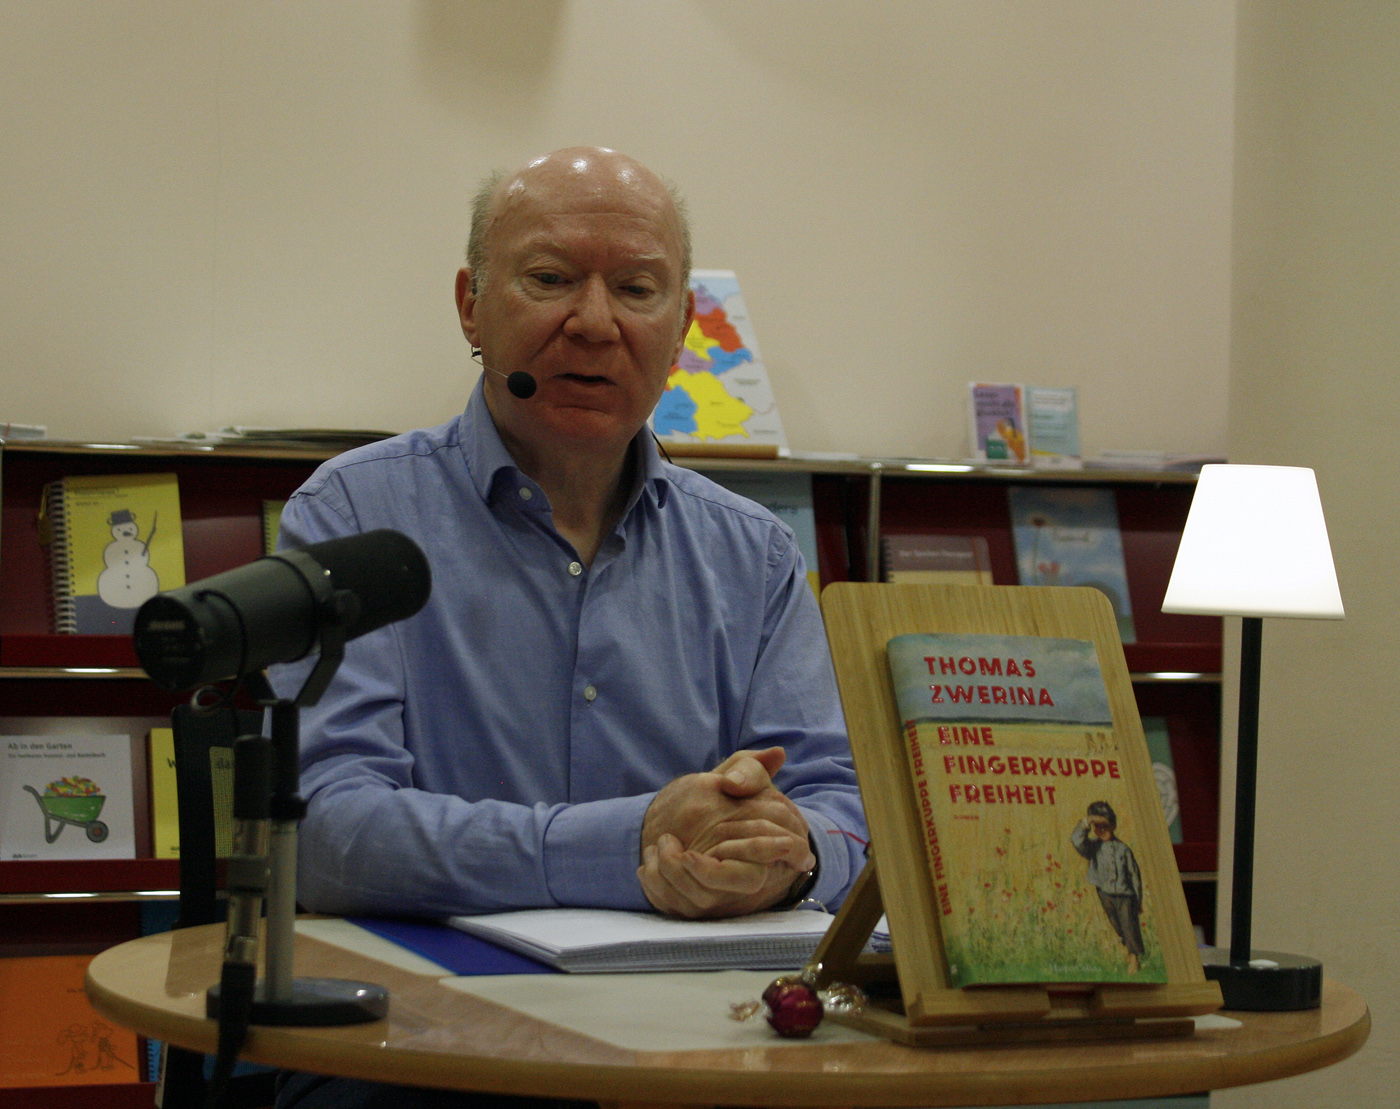 Der Autor des Buches "Eine Fingerkuppe Freiheit" Thomas Zwerina sitzt vor einem runden Tisch, auf dem ein Mikro, sein Buch und eine Leselampe steht.